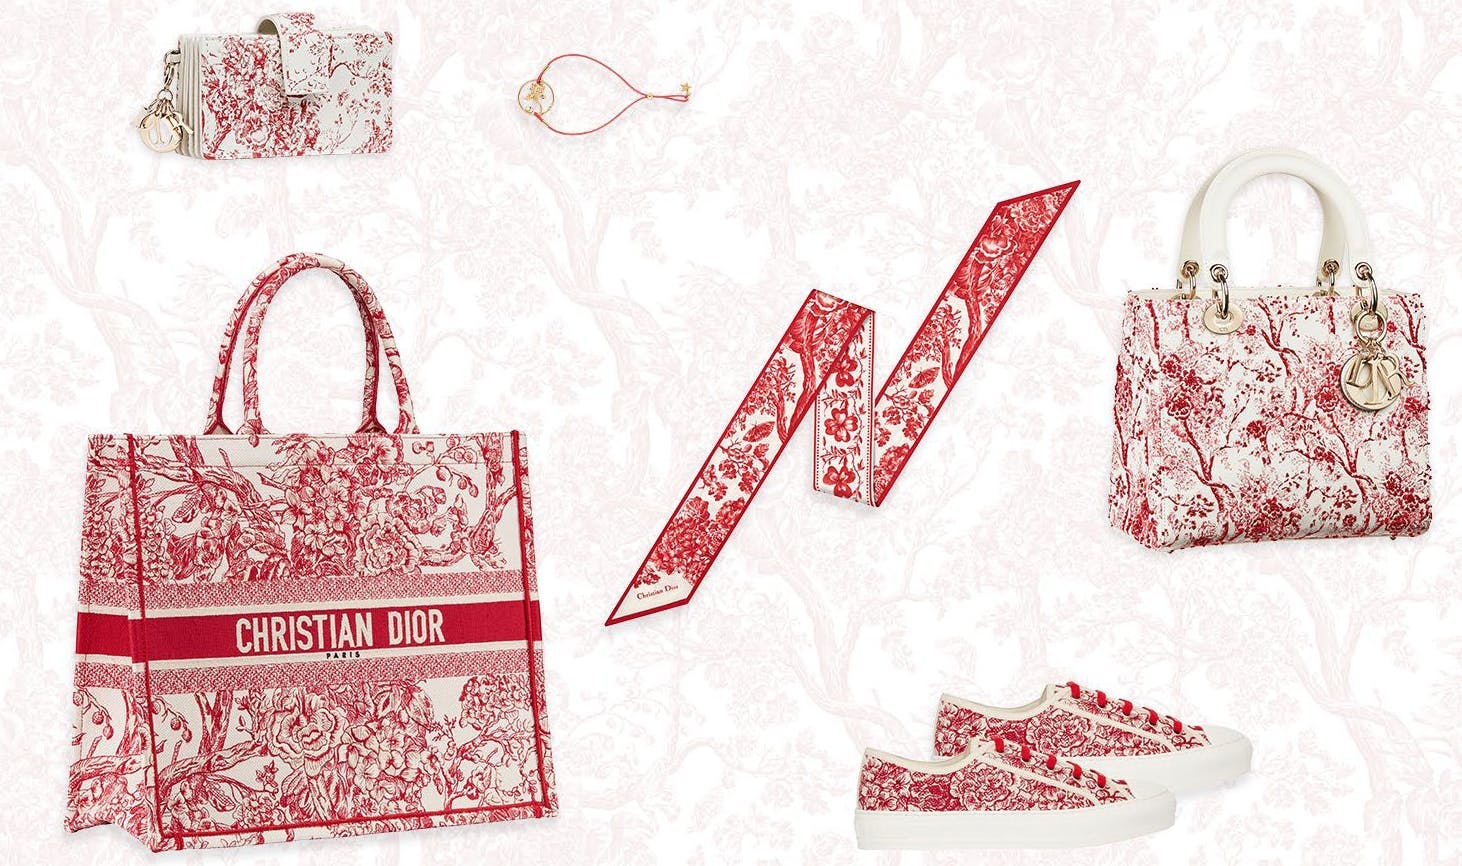 handbag accessories accessory bag